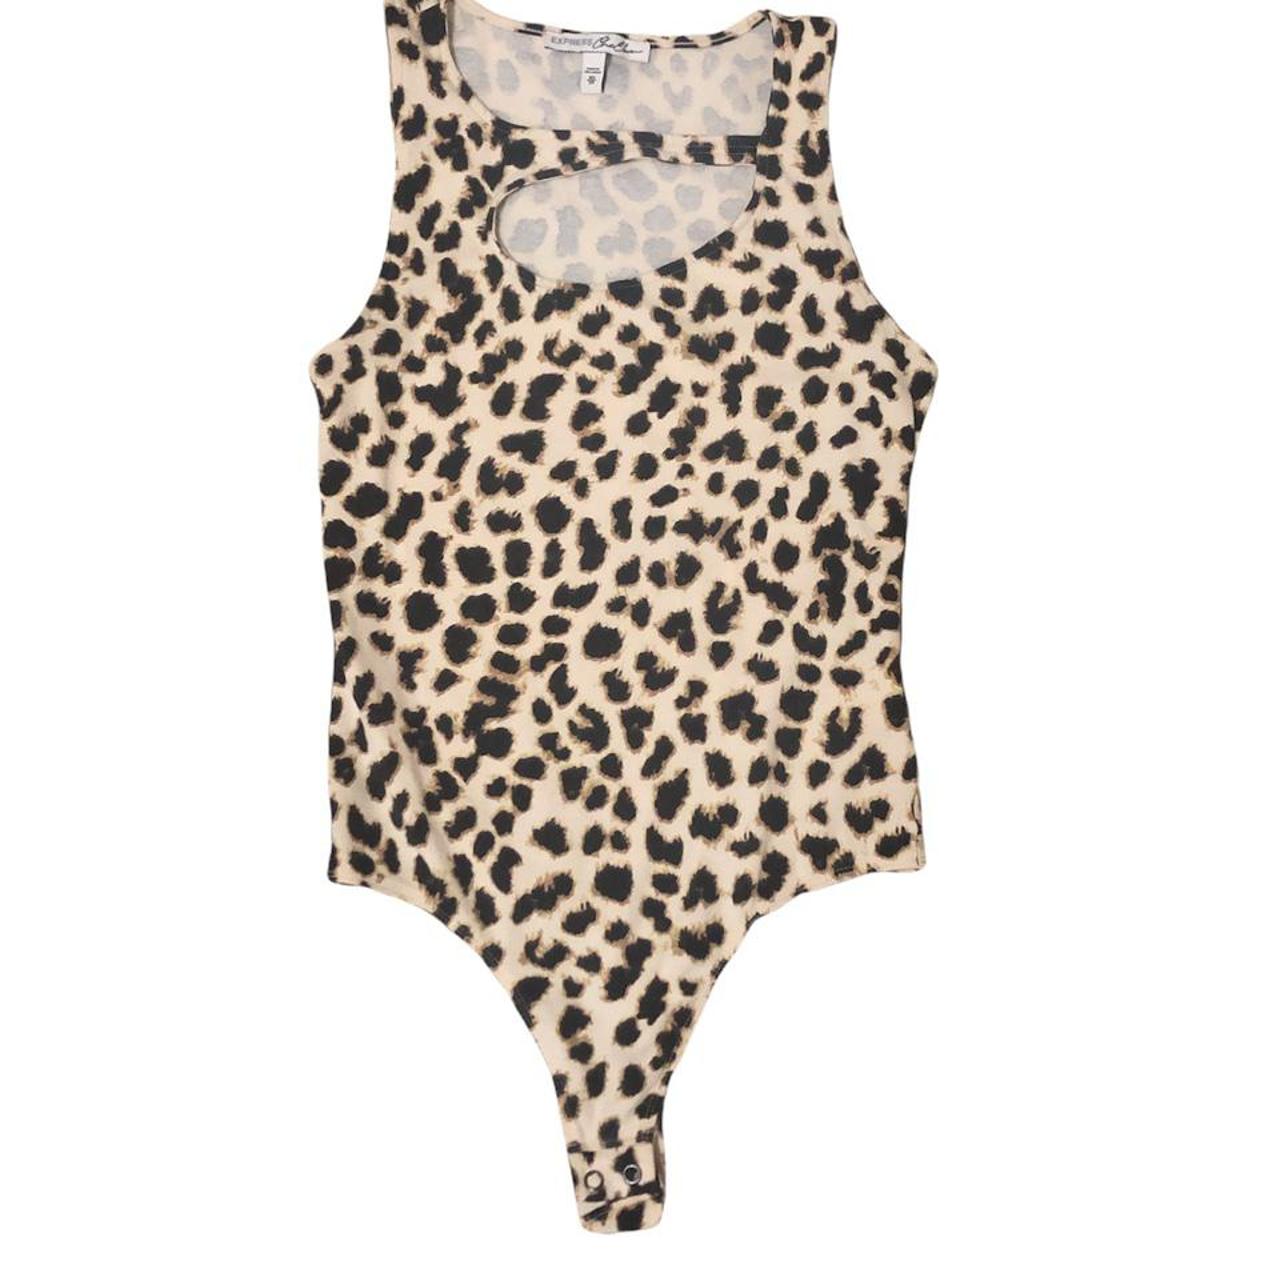 Product Image 1 - Cheetah print top/bodysuit 🐆
•
Flattering cut